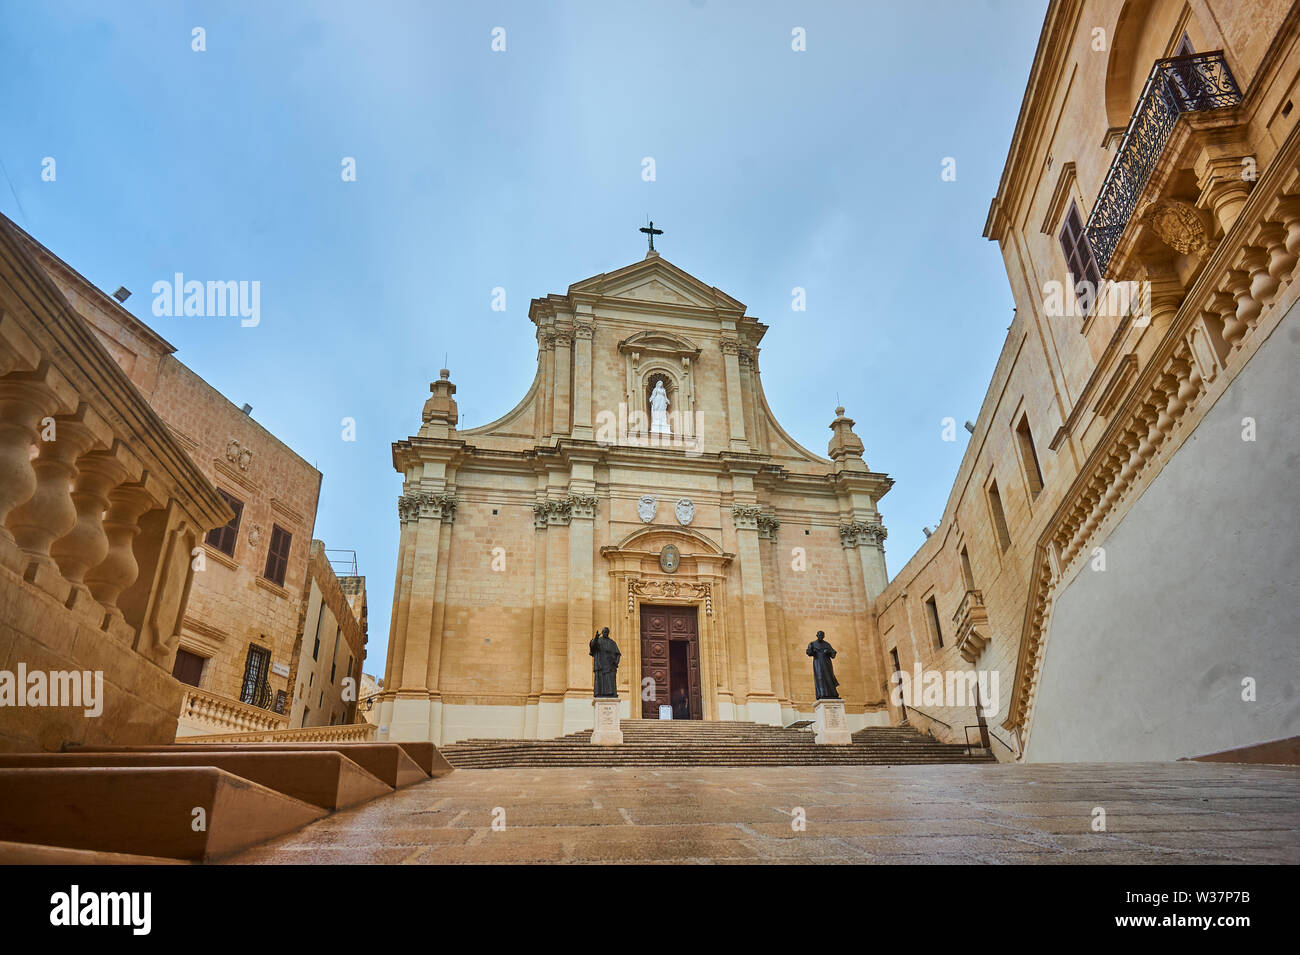 Kathedrale Santa Marija in der im Mittelalter erbauten Festung Cittadella di Victoria meltesisch Rabat auf der Insel Gozo zugehörig zu Mata. Foto Stock